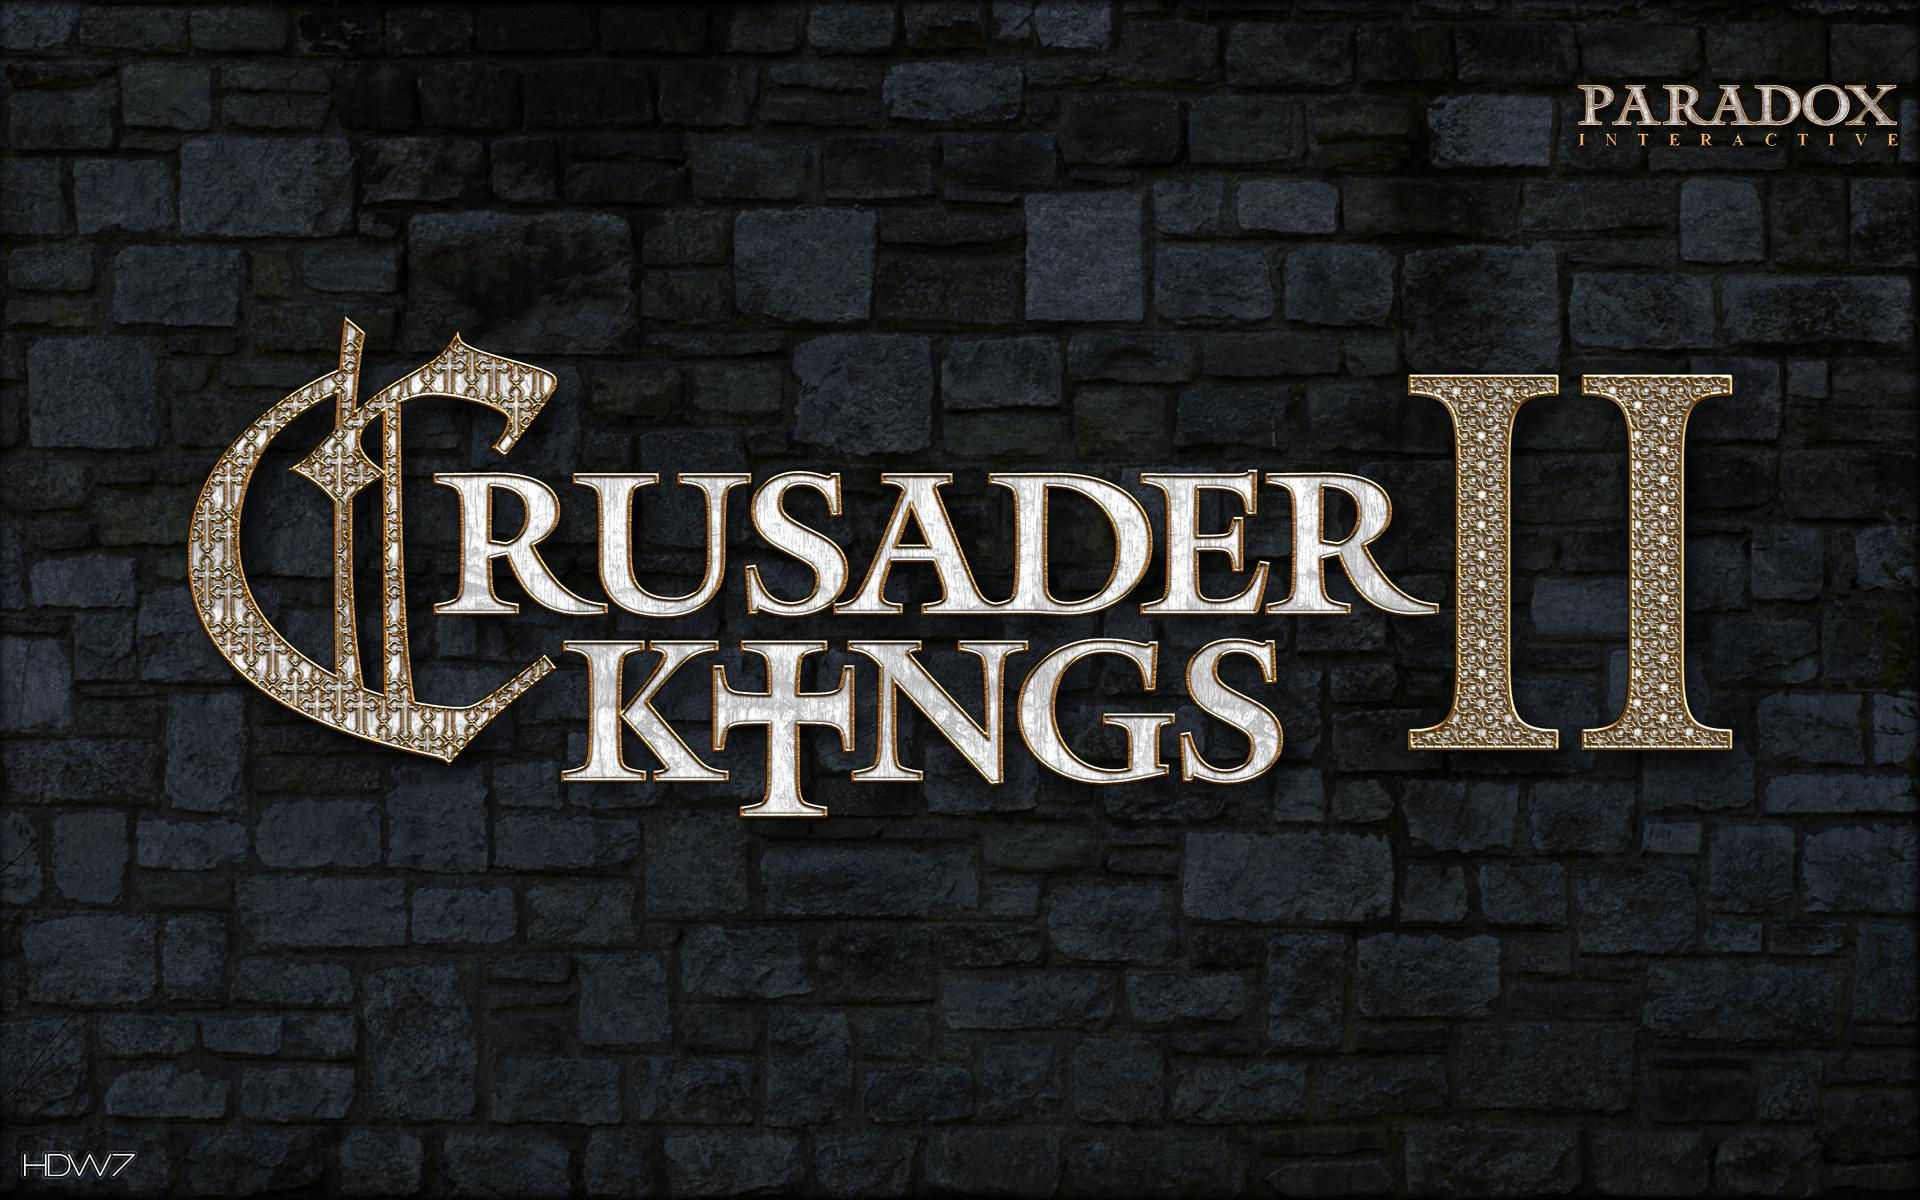 Crusader kings 2 crusader kings 2 widescreen wallpaper